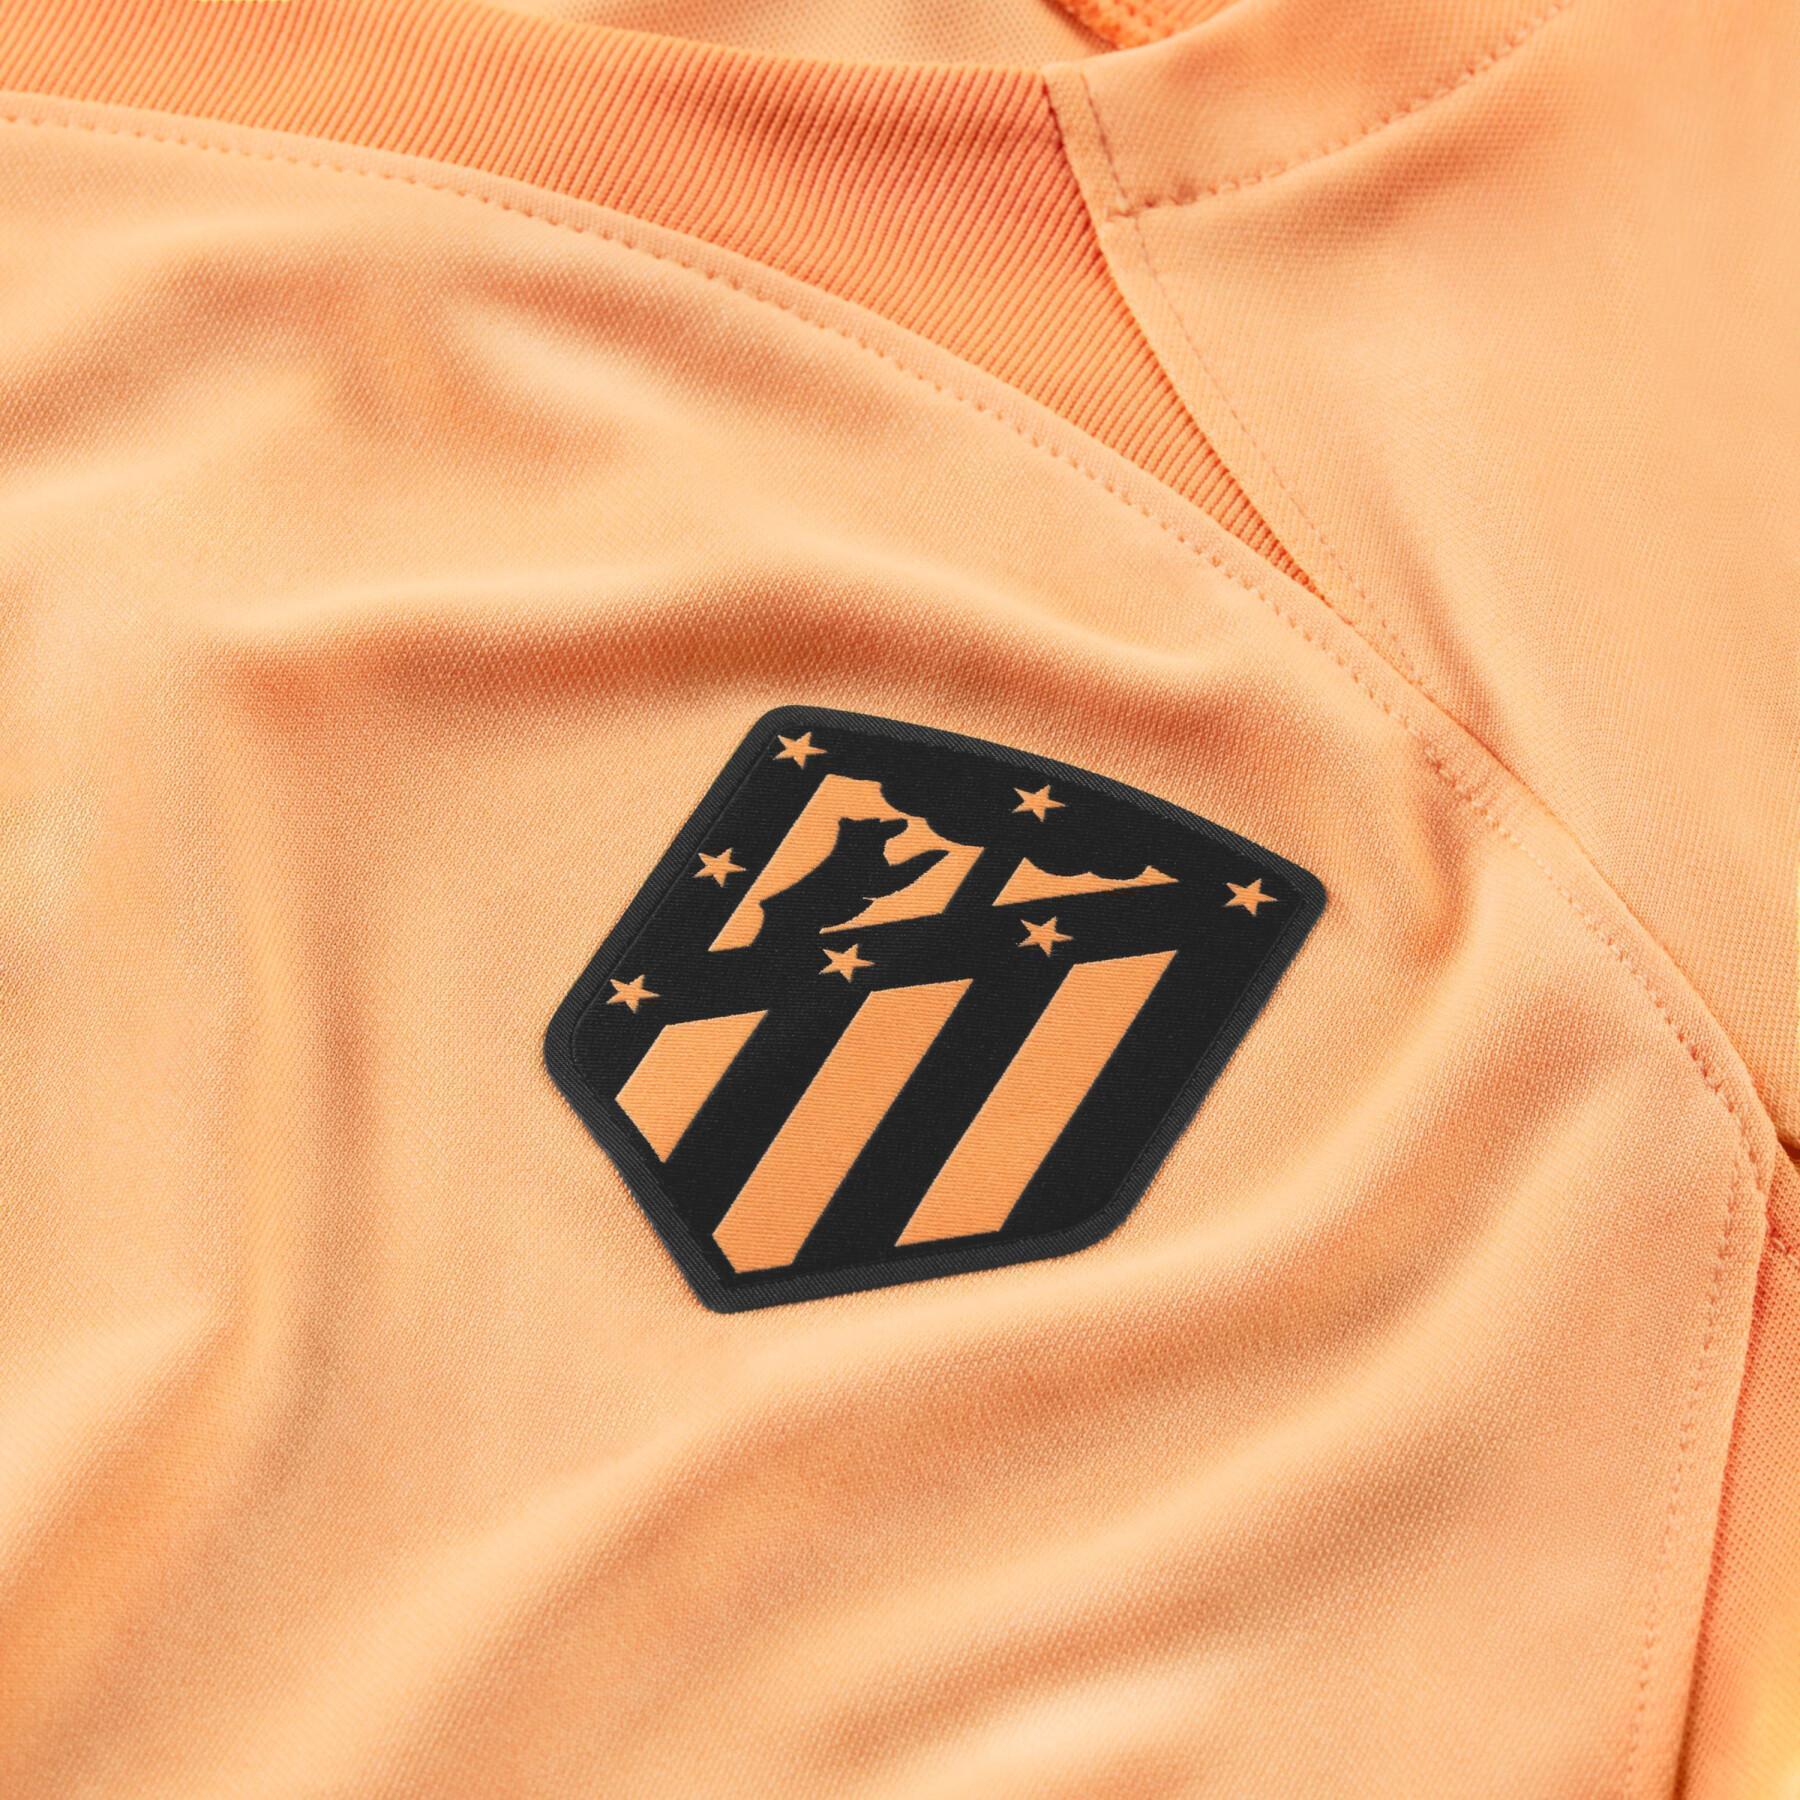 Terceira camisola para crianças Atlético Madrid 2022/23